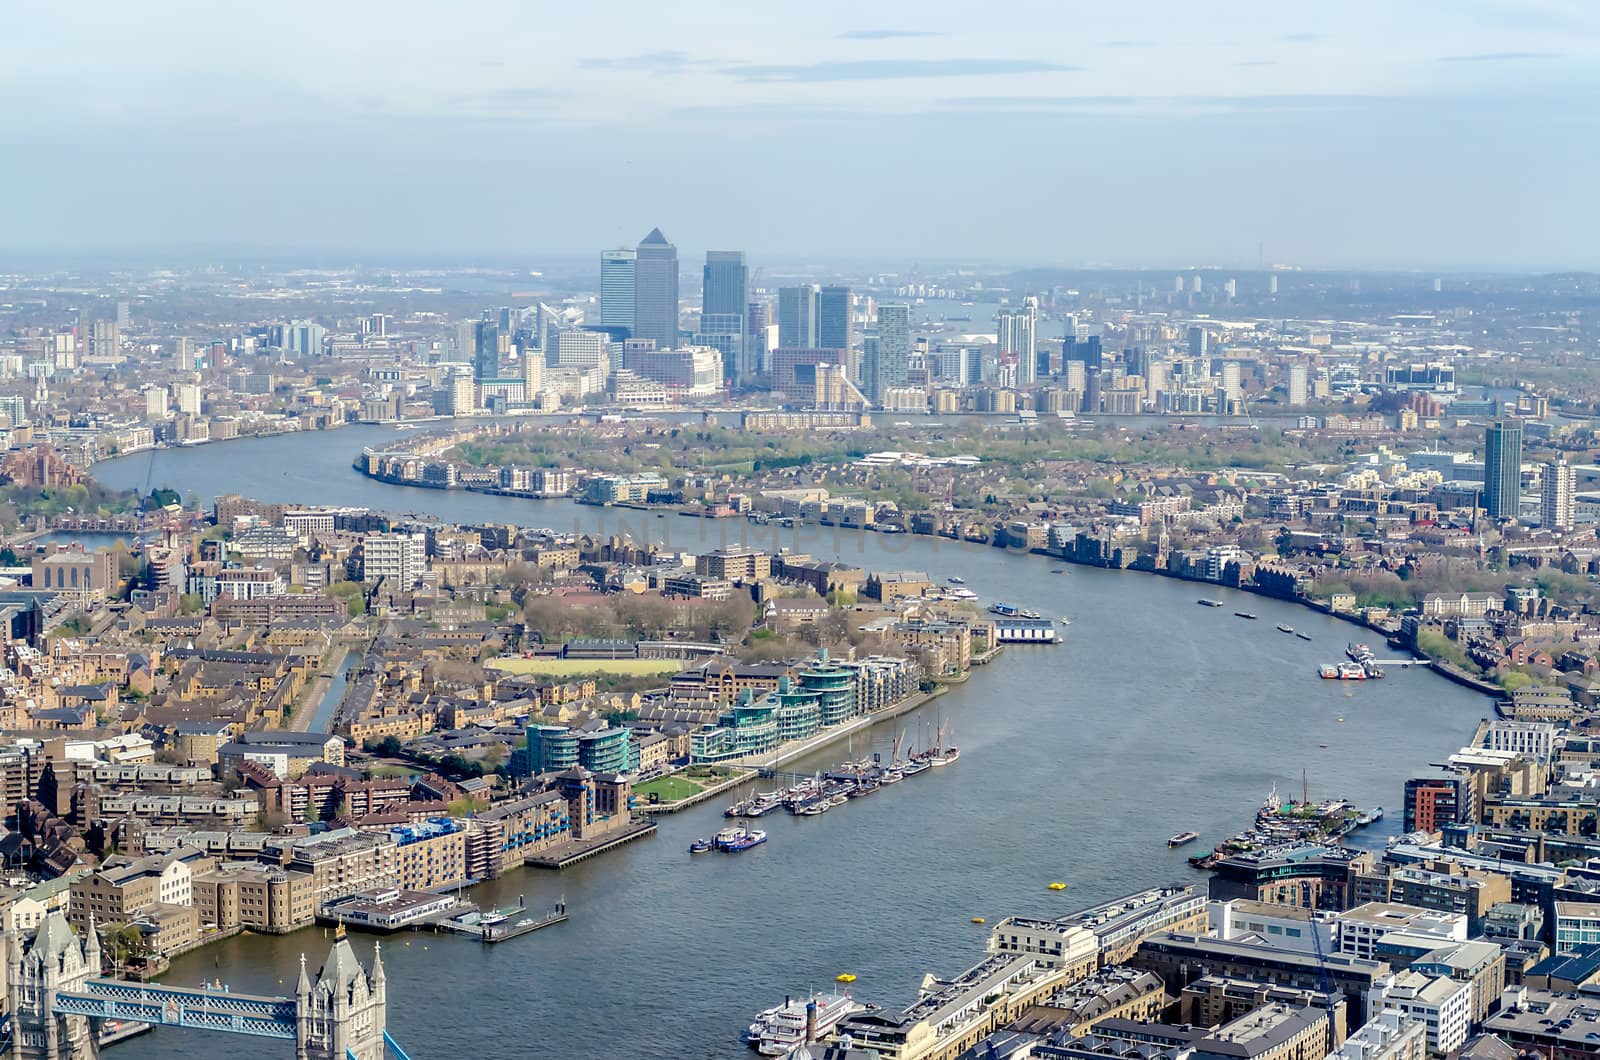 Panoramic View of London by marcorubino